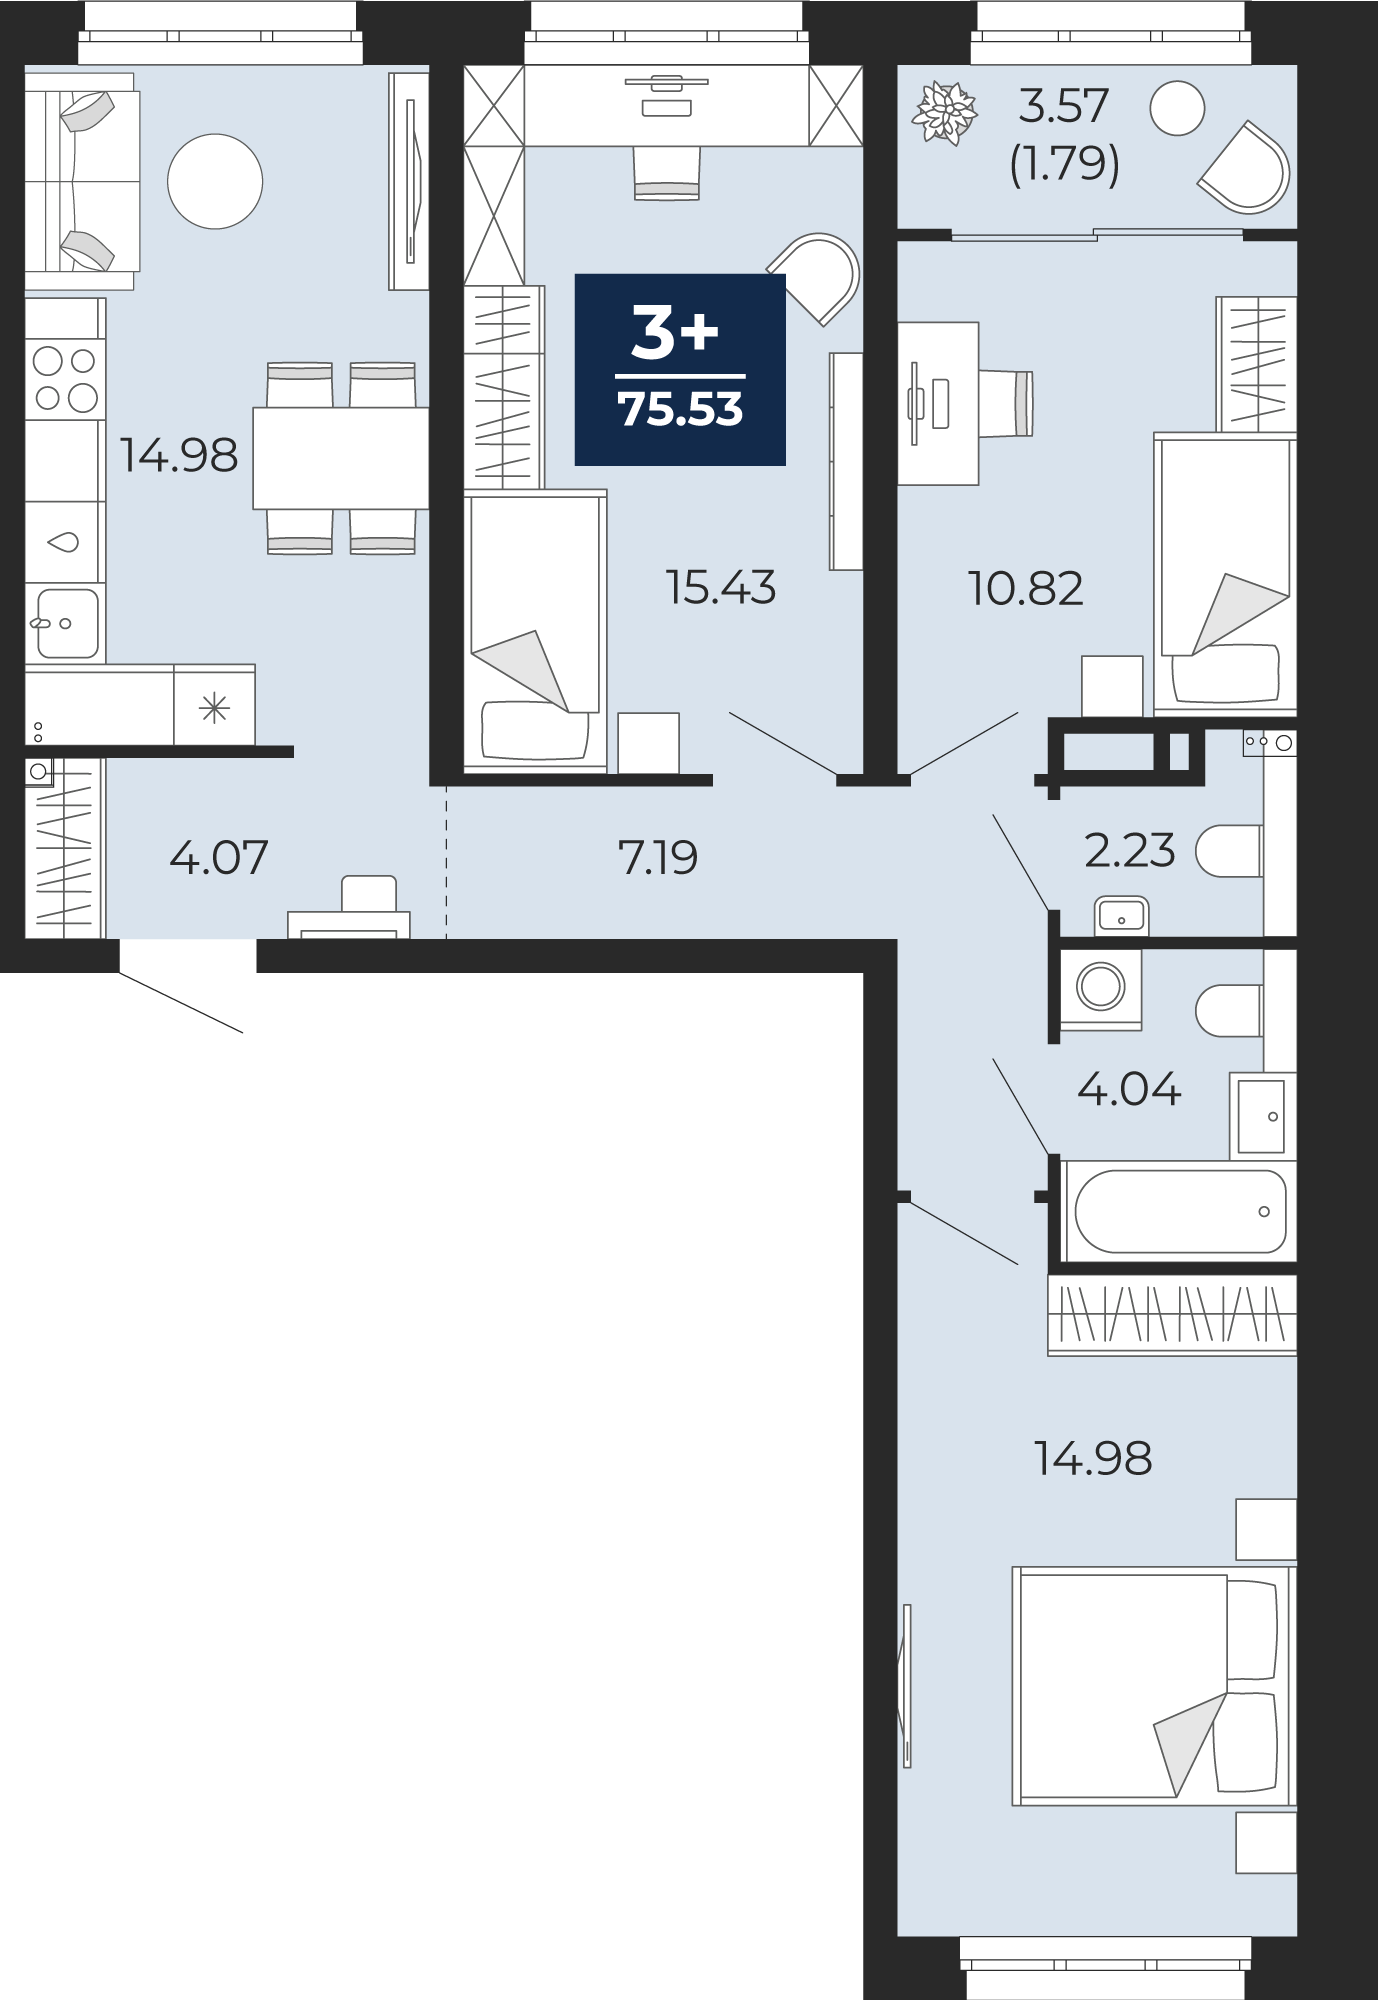 Квартира № 43, 3-комнатная, 75.53 кв. м, 10 этаж